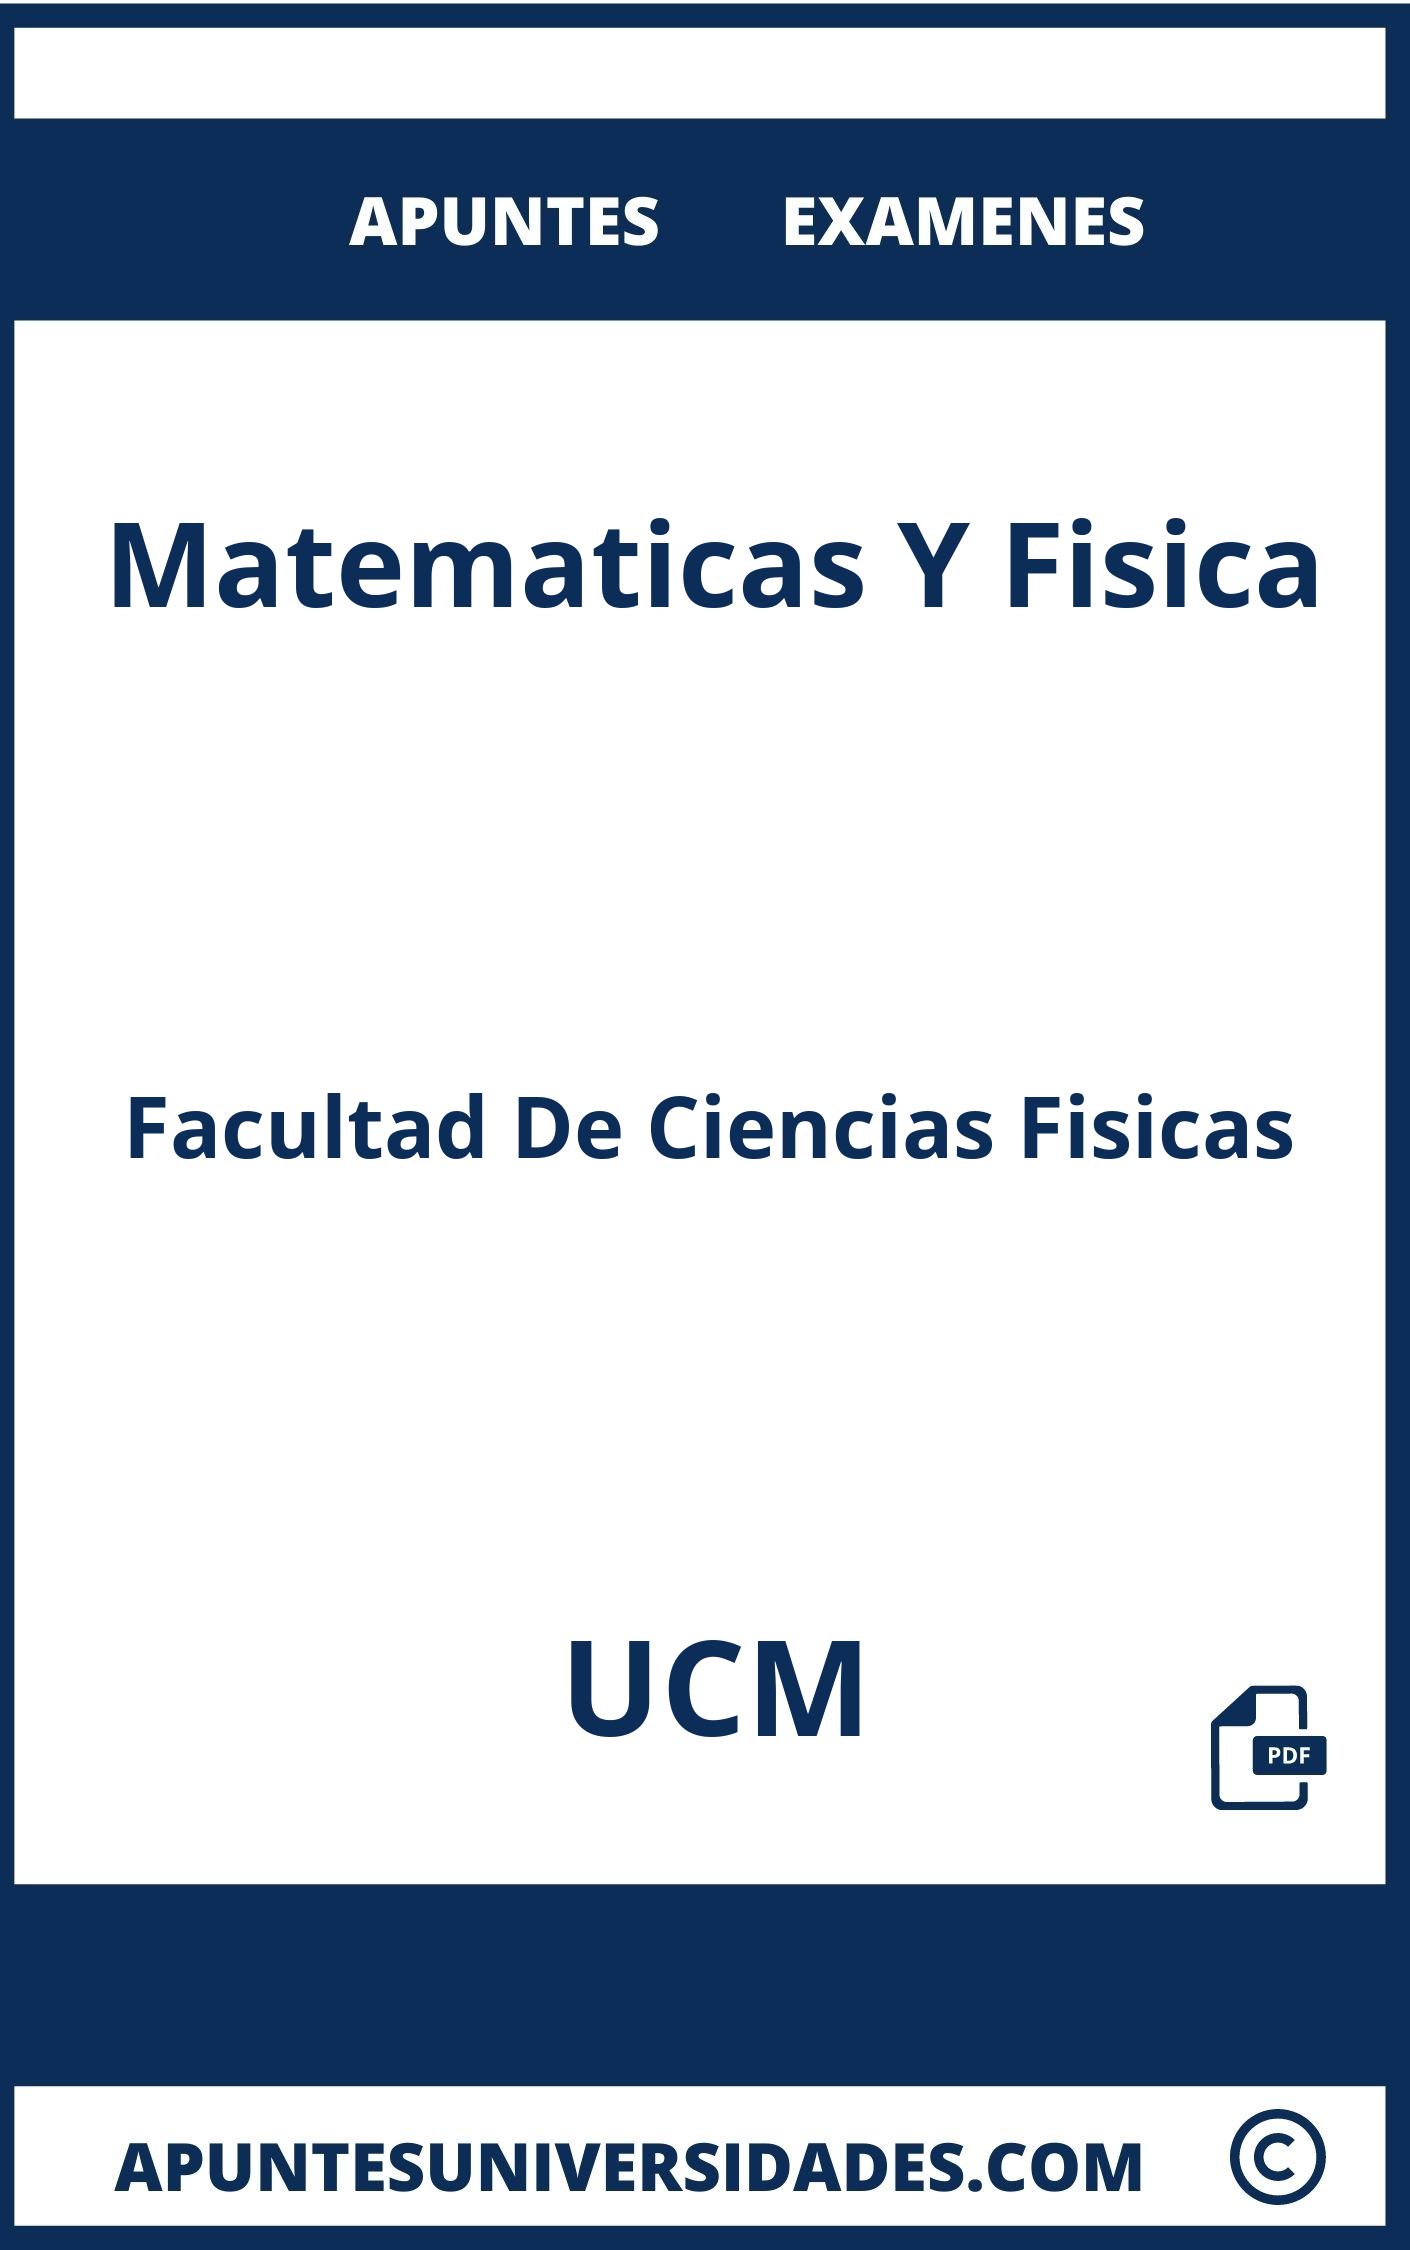 Apuntes y Examenes Matematicas Y Fisica UCM